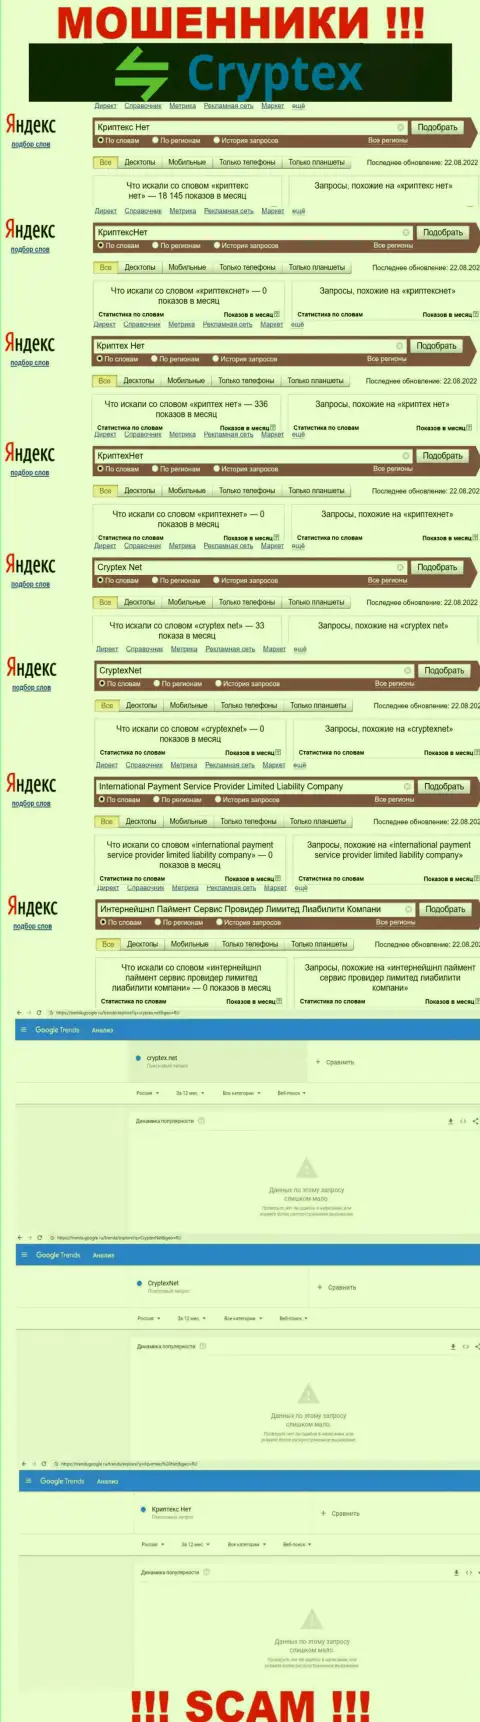 Скриншот статистики online-запросов по преступно действующей организации Криптекс Нет